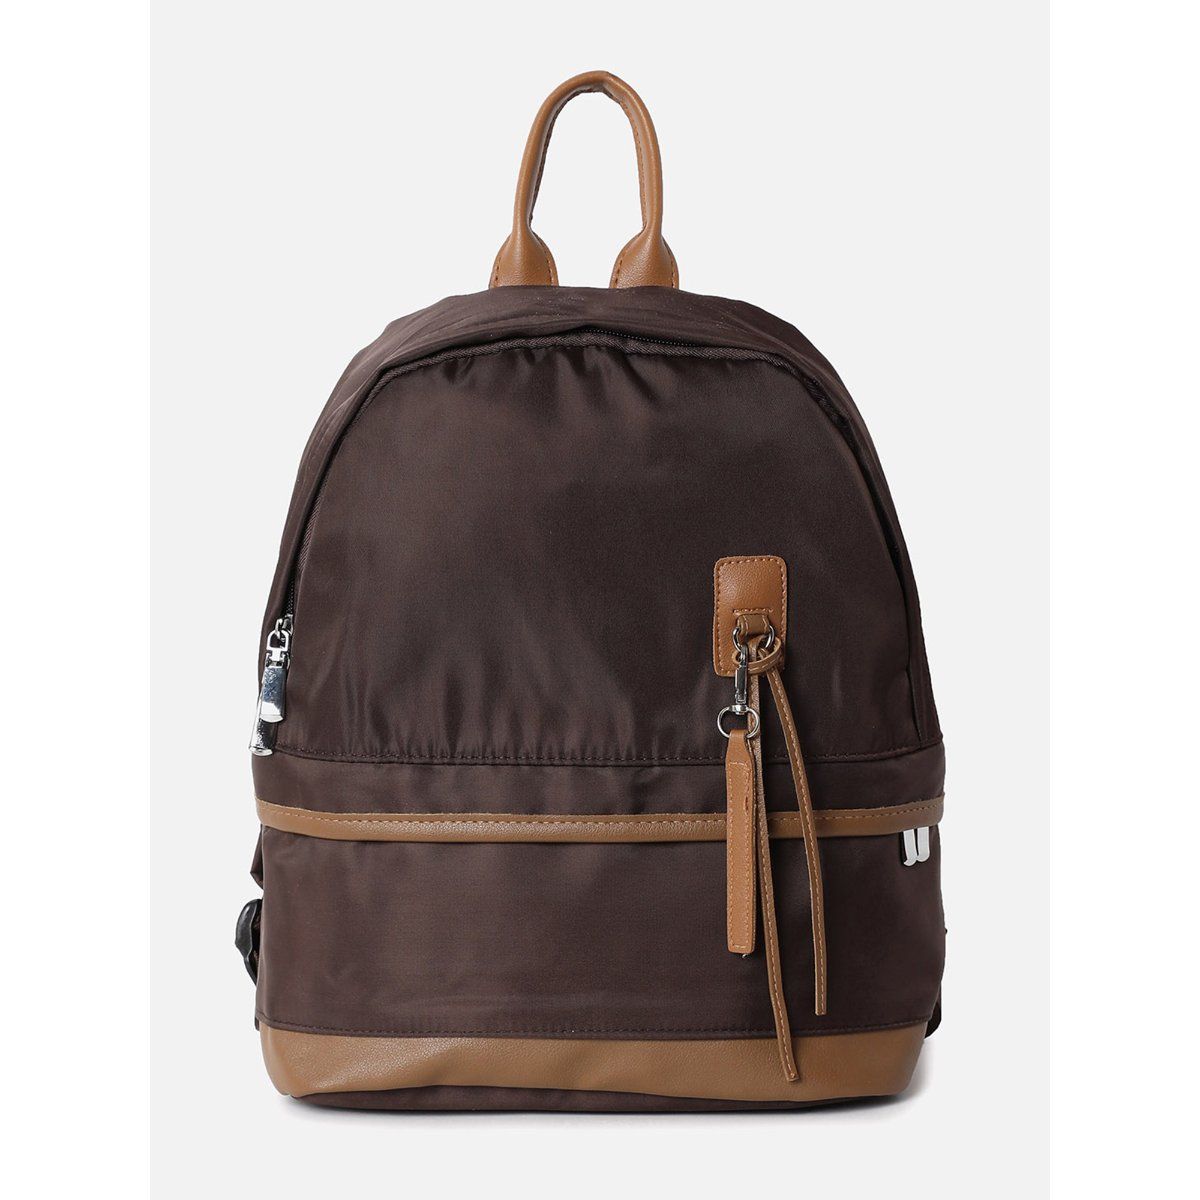 Buy Backpack for Men Leather Dark Brown Backpack Purse Leather Backpack Bag  Sports Bag Gym Bag Leather Shoulder Women Backpack Bag Online in India -  Etsy